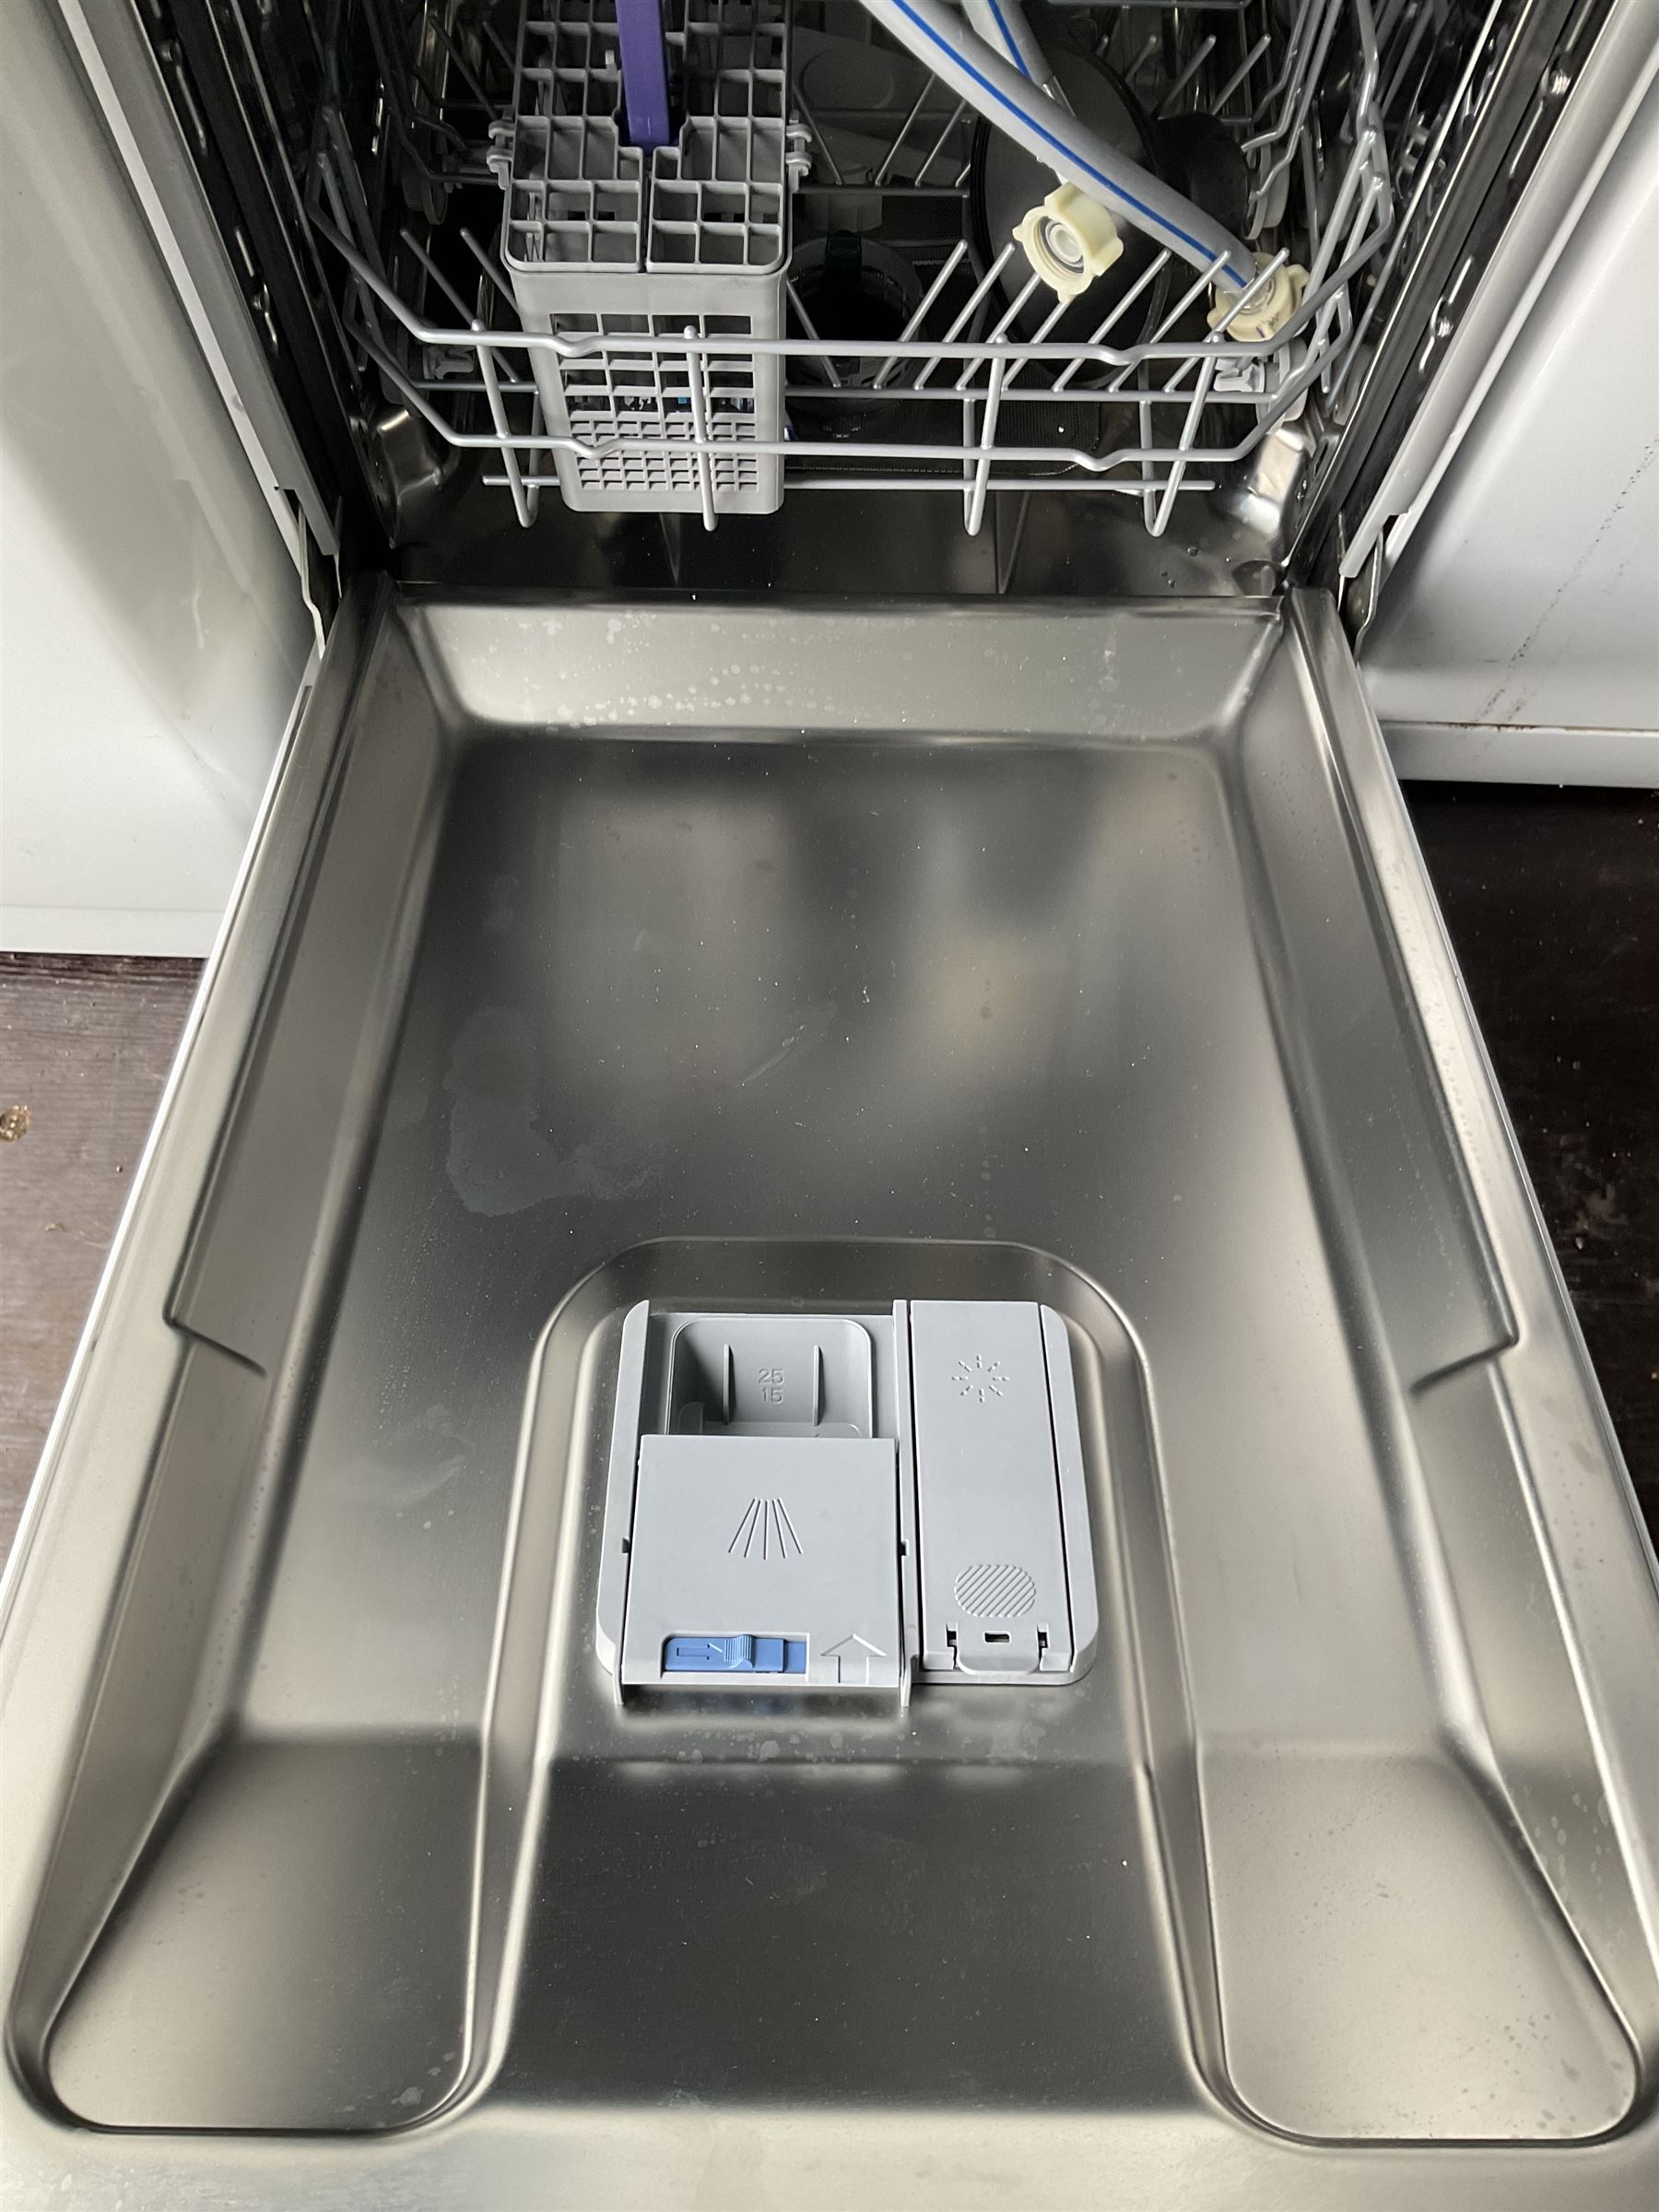 Beko slimline dishwasher - Image 4 of 5